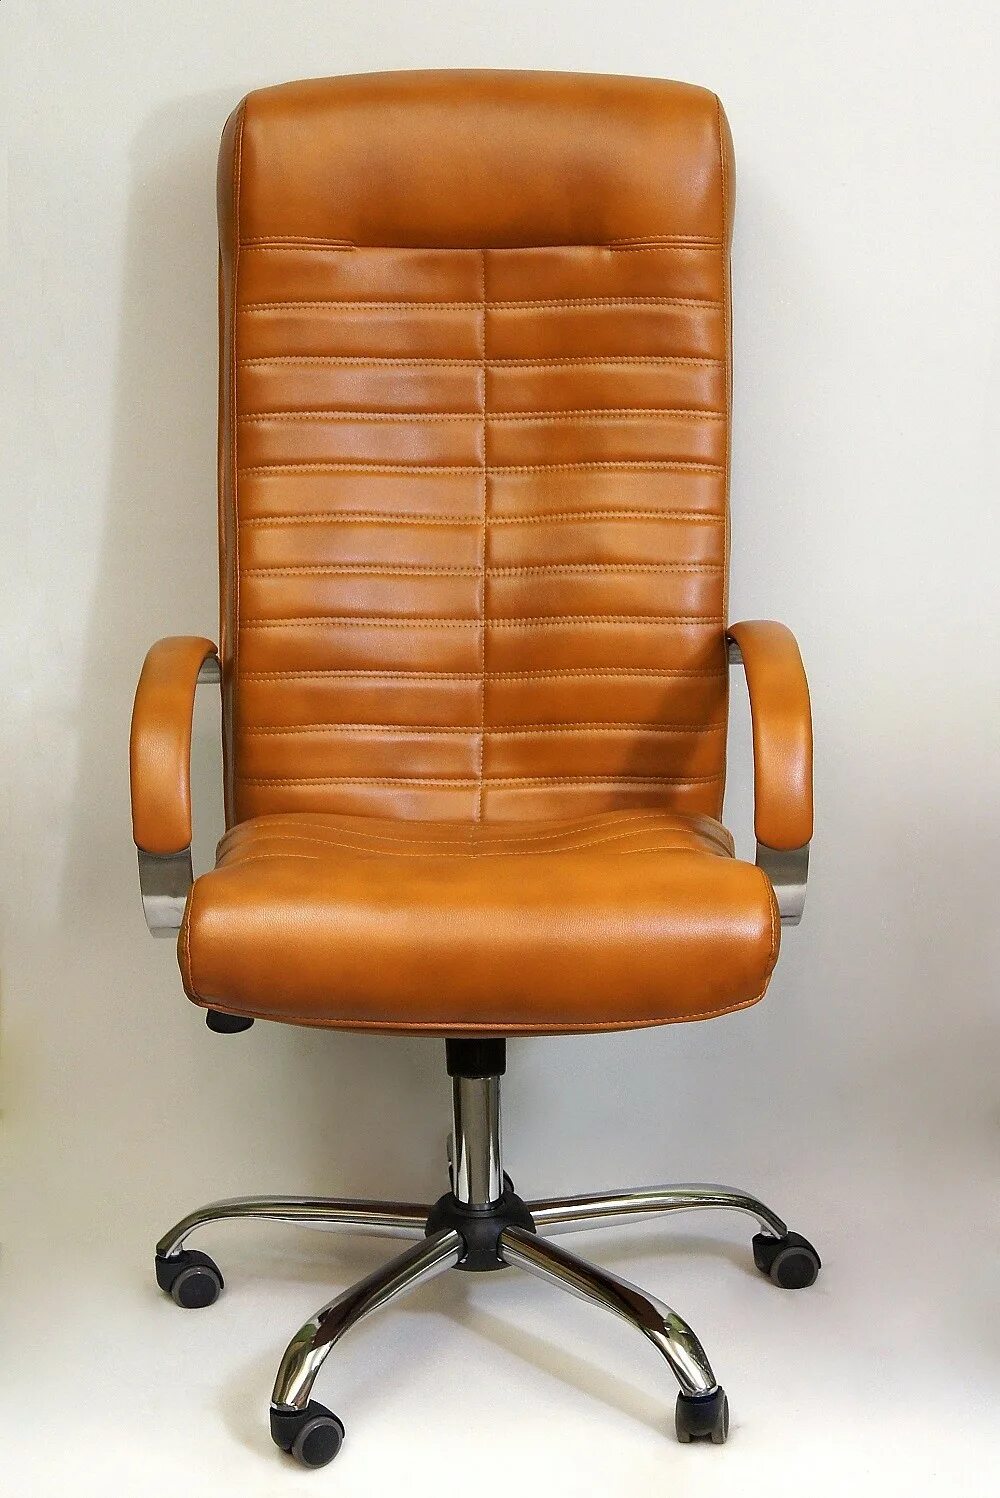 Браво мебель компьютерное кресло Орион. Кресло "Орион" (экокожа/пластик). Кресло Орион 4 офисное. Кожаное кресло офисное Орион.